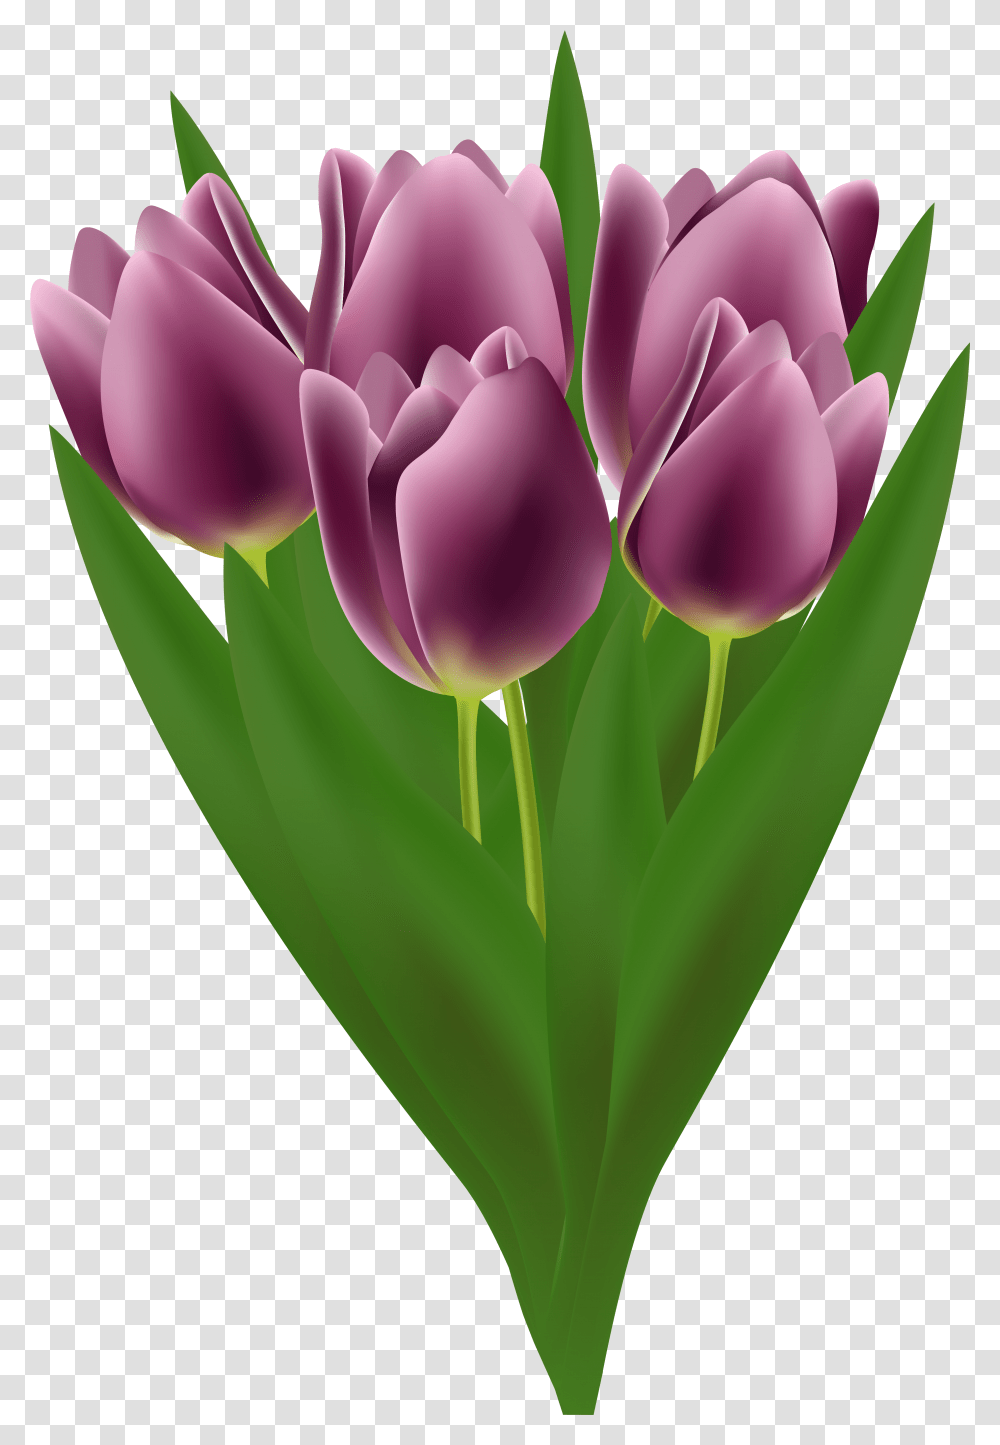 Tulips Bouquet Clip Art Image Tulip, Plant, Flower, Blossom Transparent Png